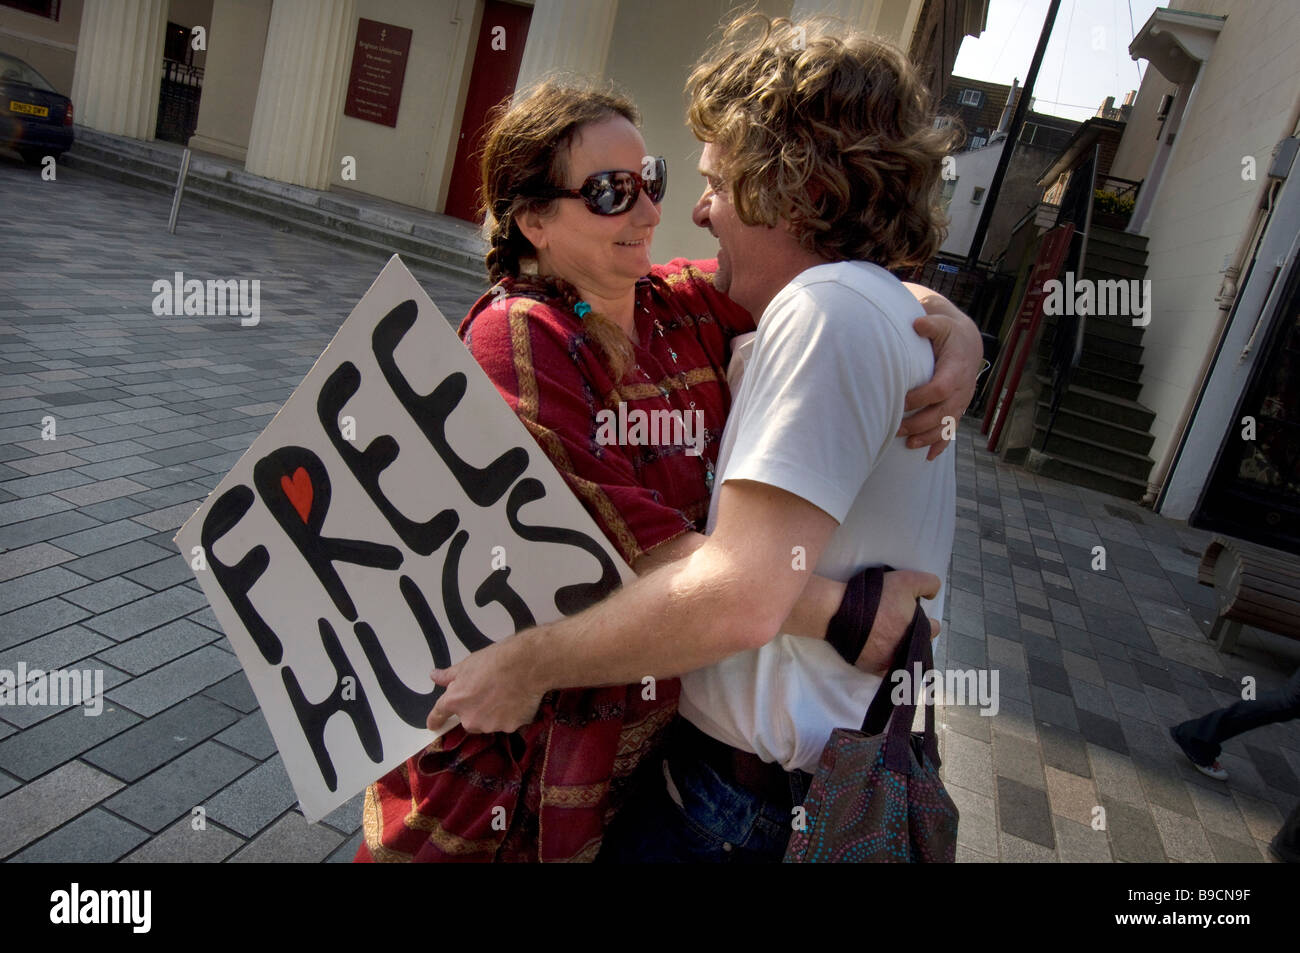 Ein junges Paar geben sich gegenseitig eine spontane Umarmung im Zentrum von Brighton während einer Veranstaltung "Free Hugs" Stockfoto